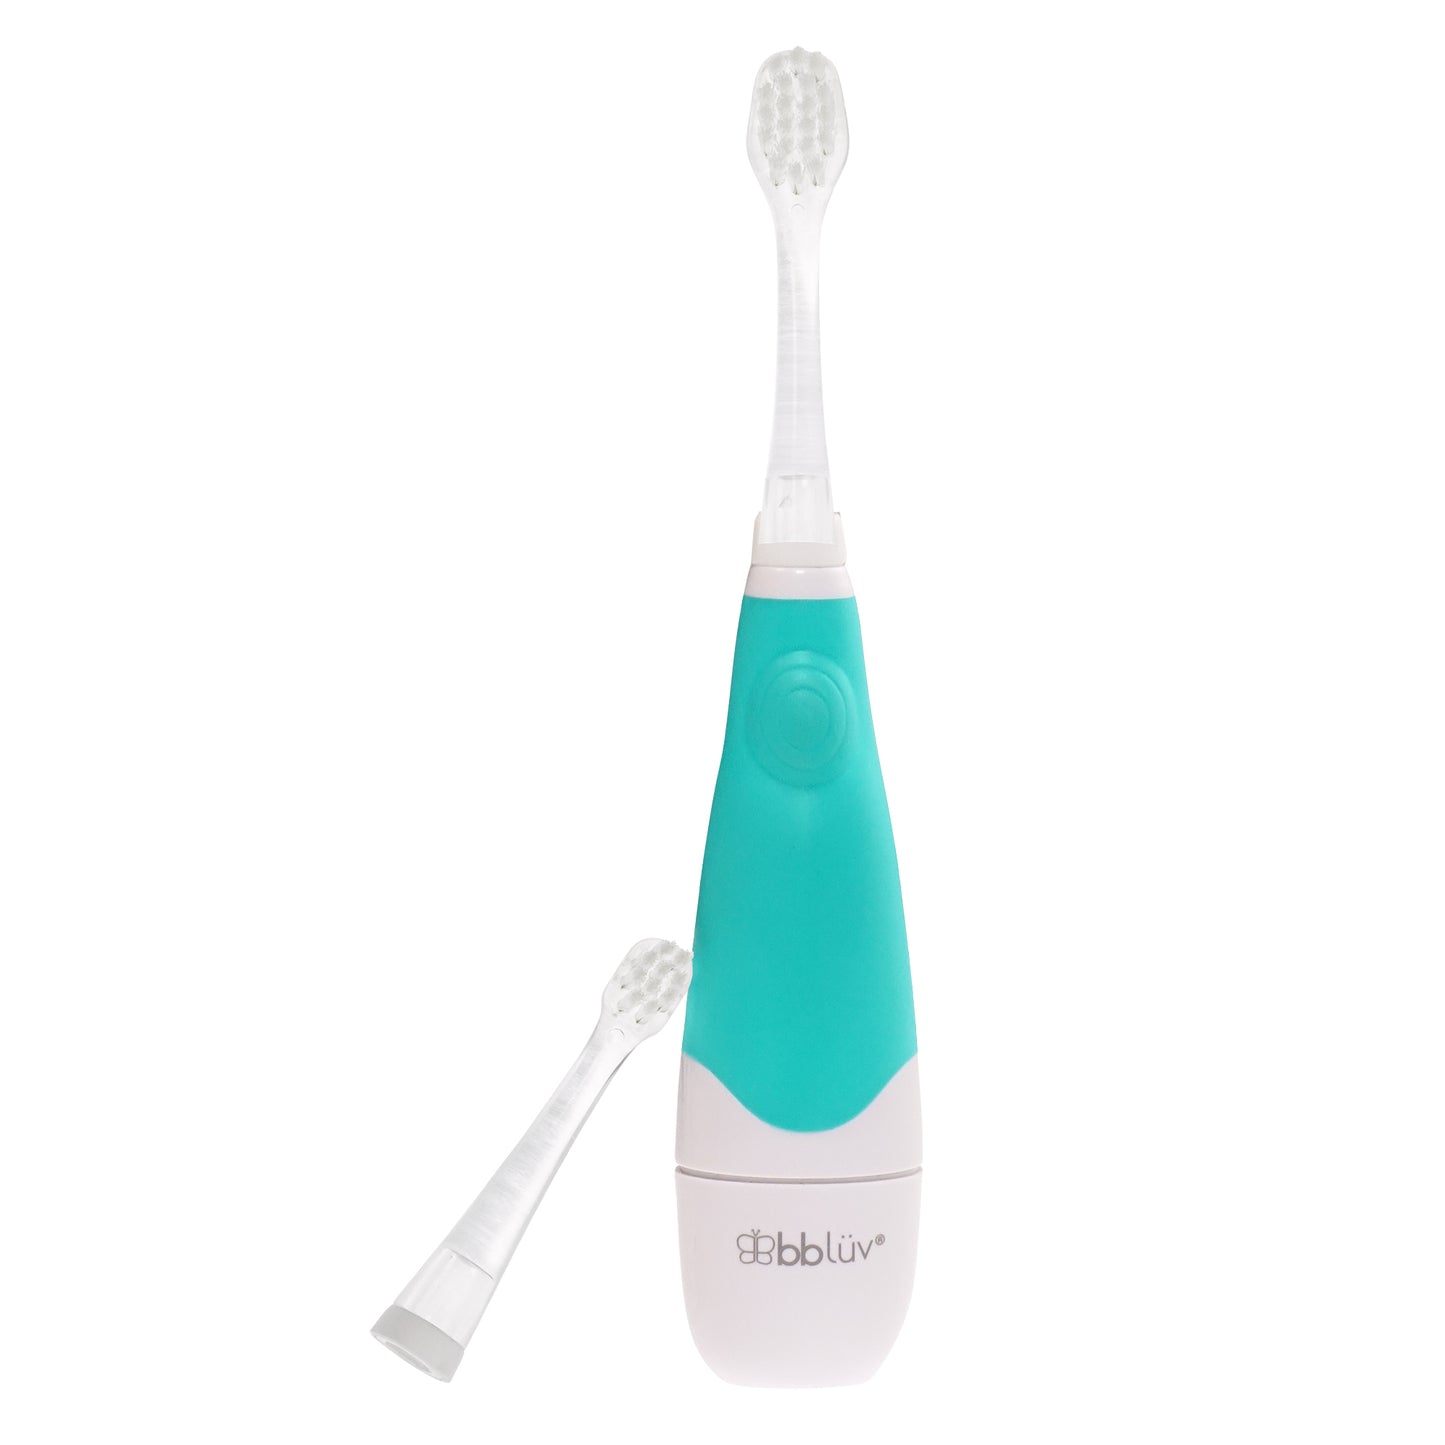 Cepillo de dientes eléctrico Sonik- Bblüv